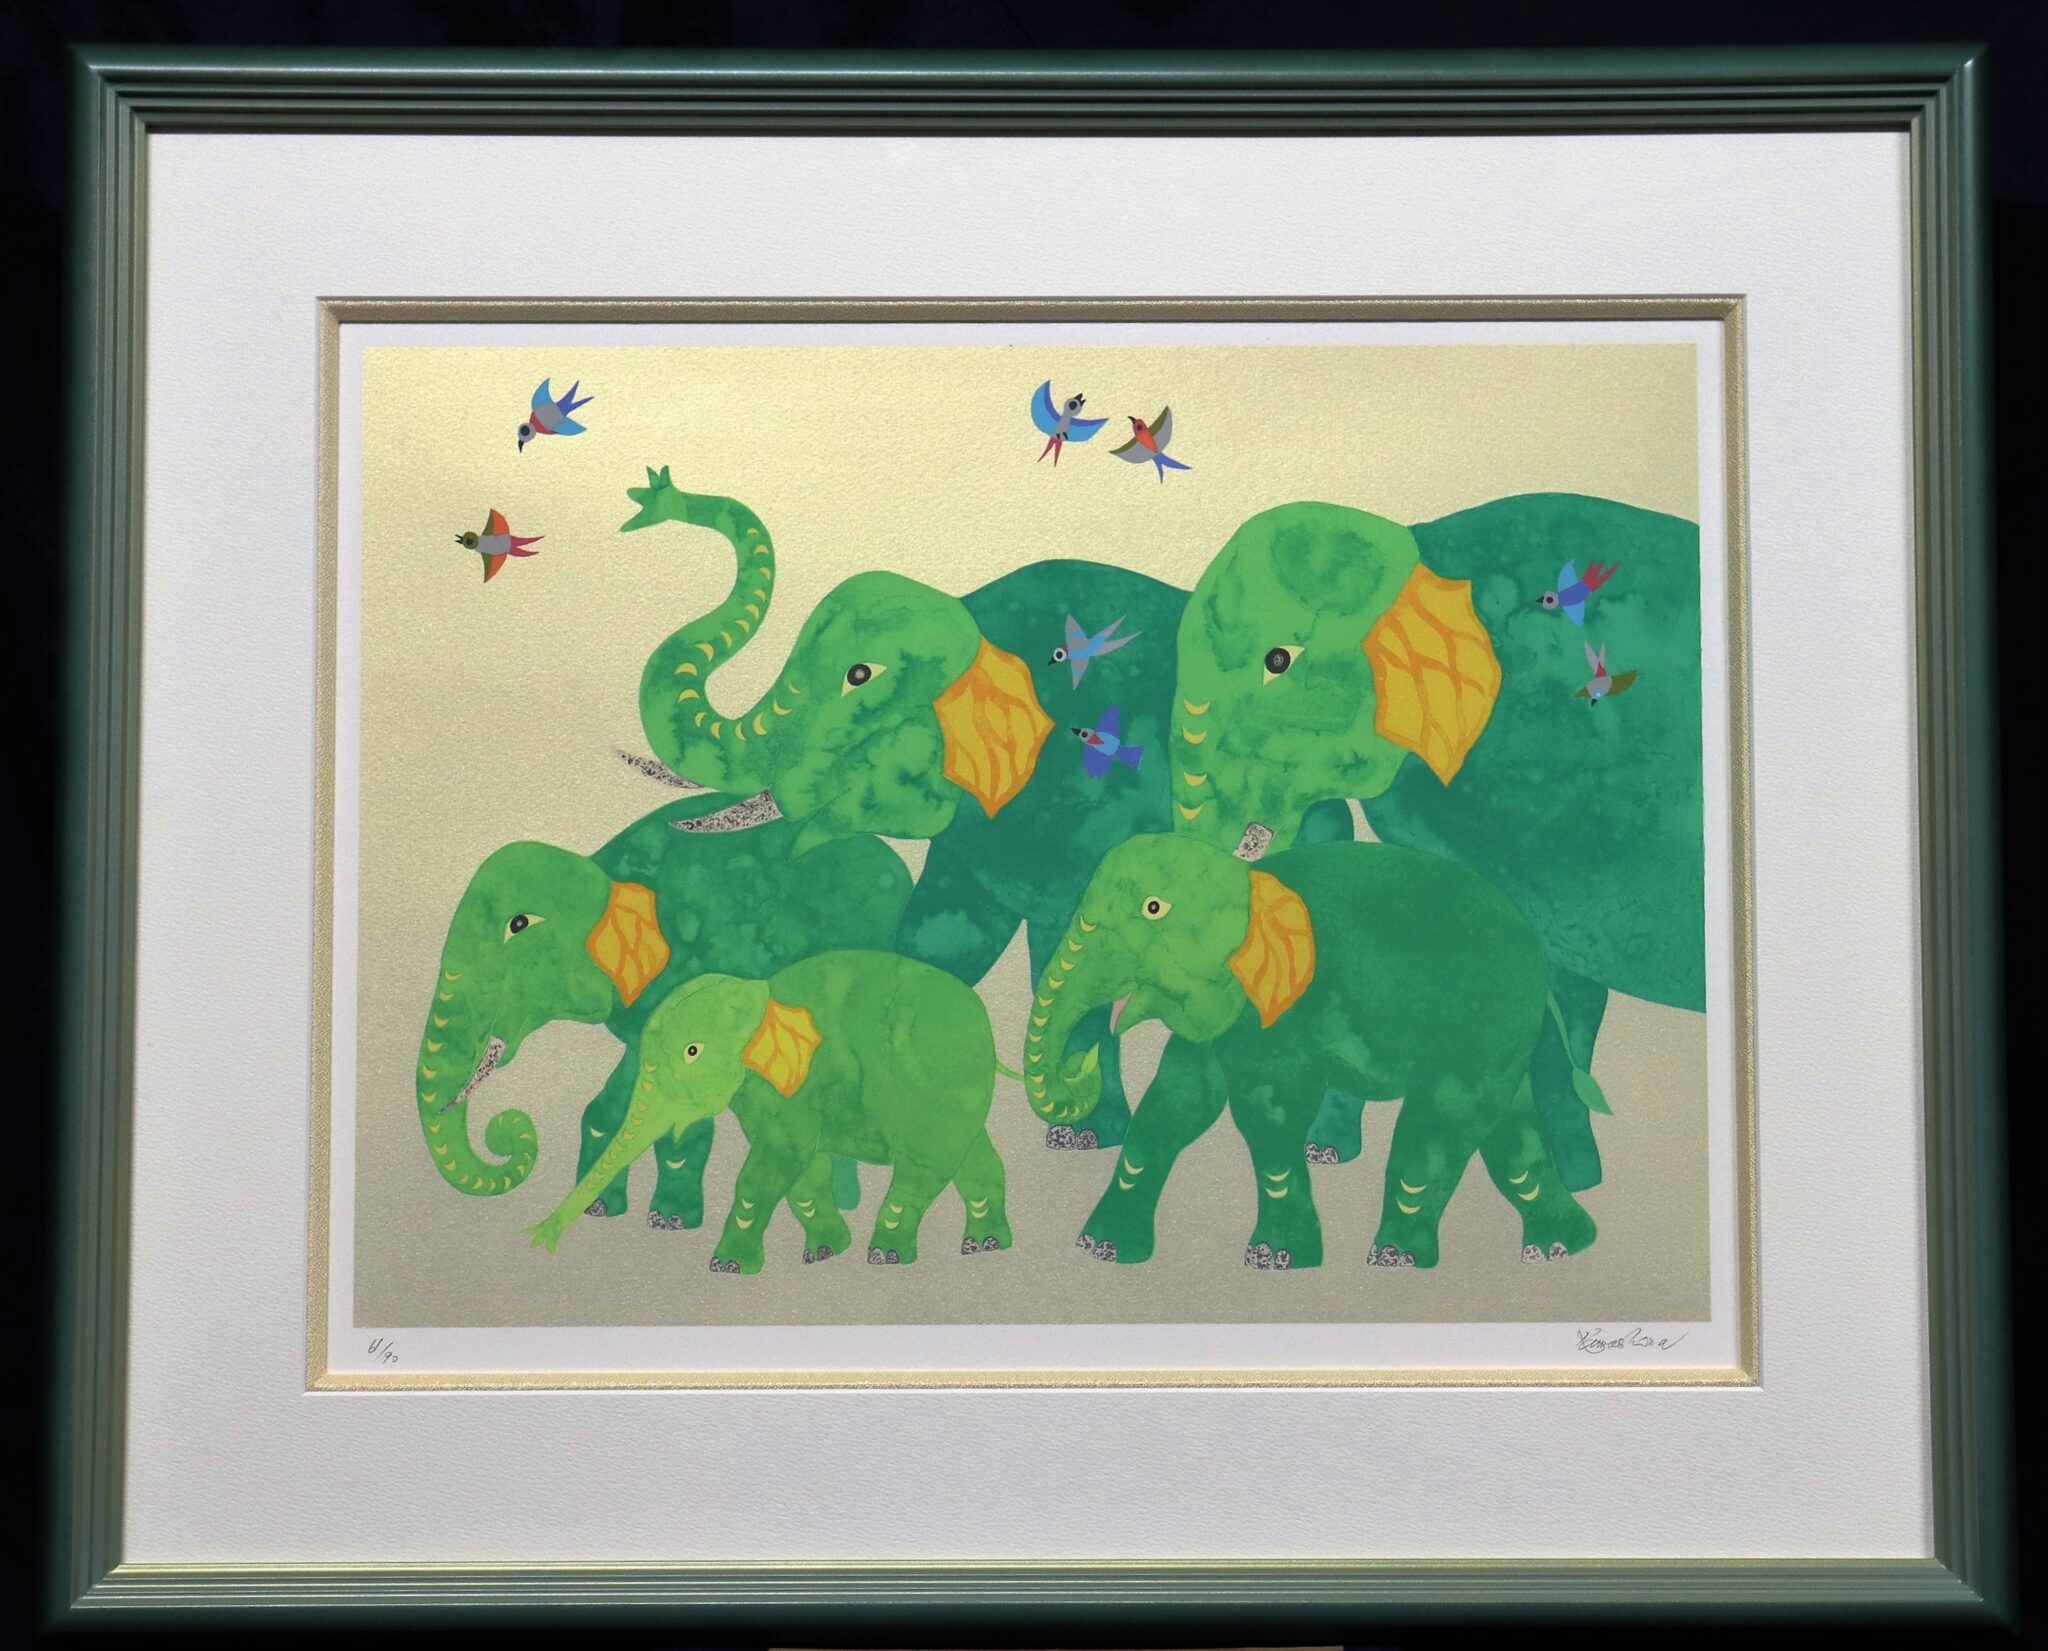 おうちギャラリー 河嶋淳司先生の「家族象」 版画を紹介します | 絵画